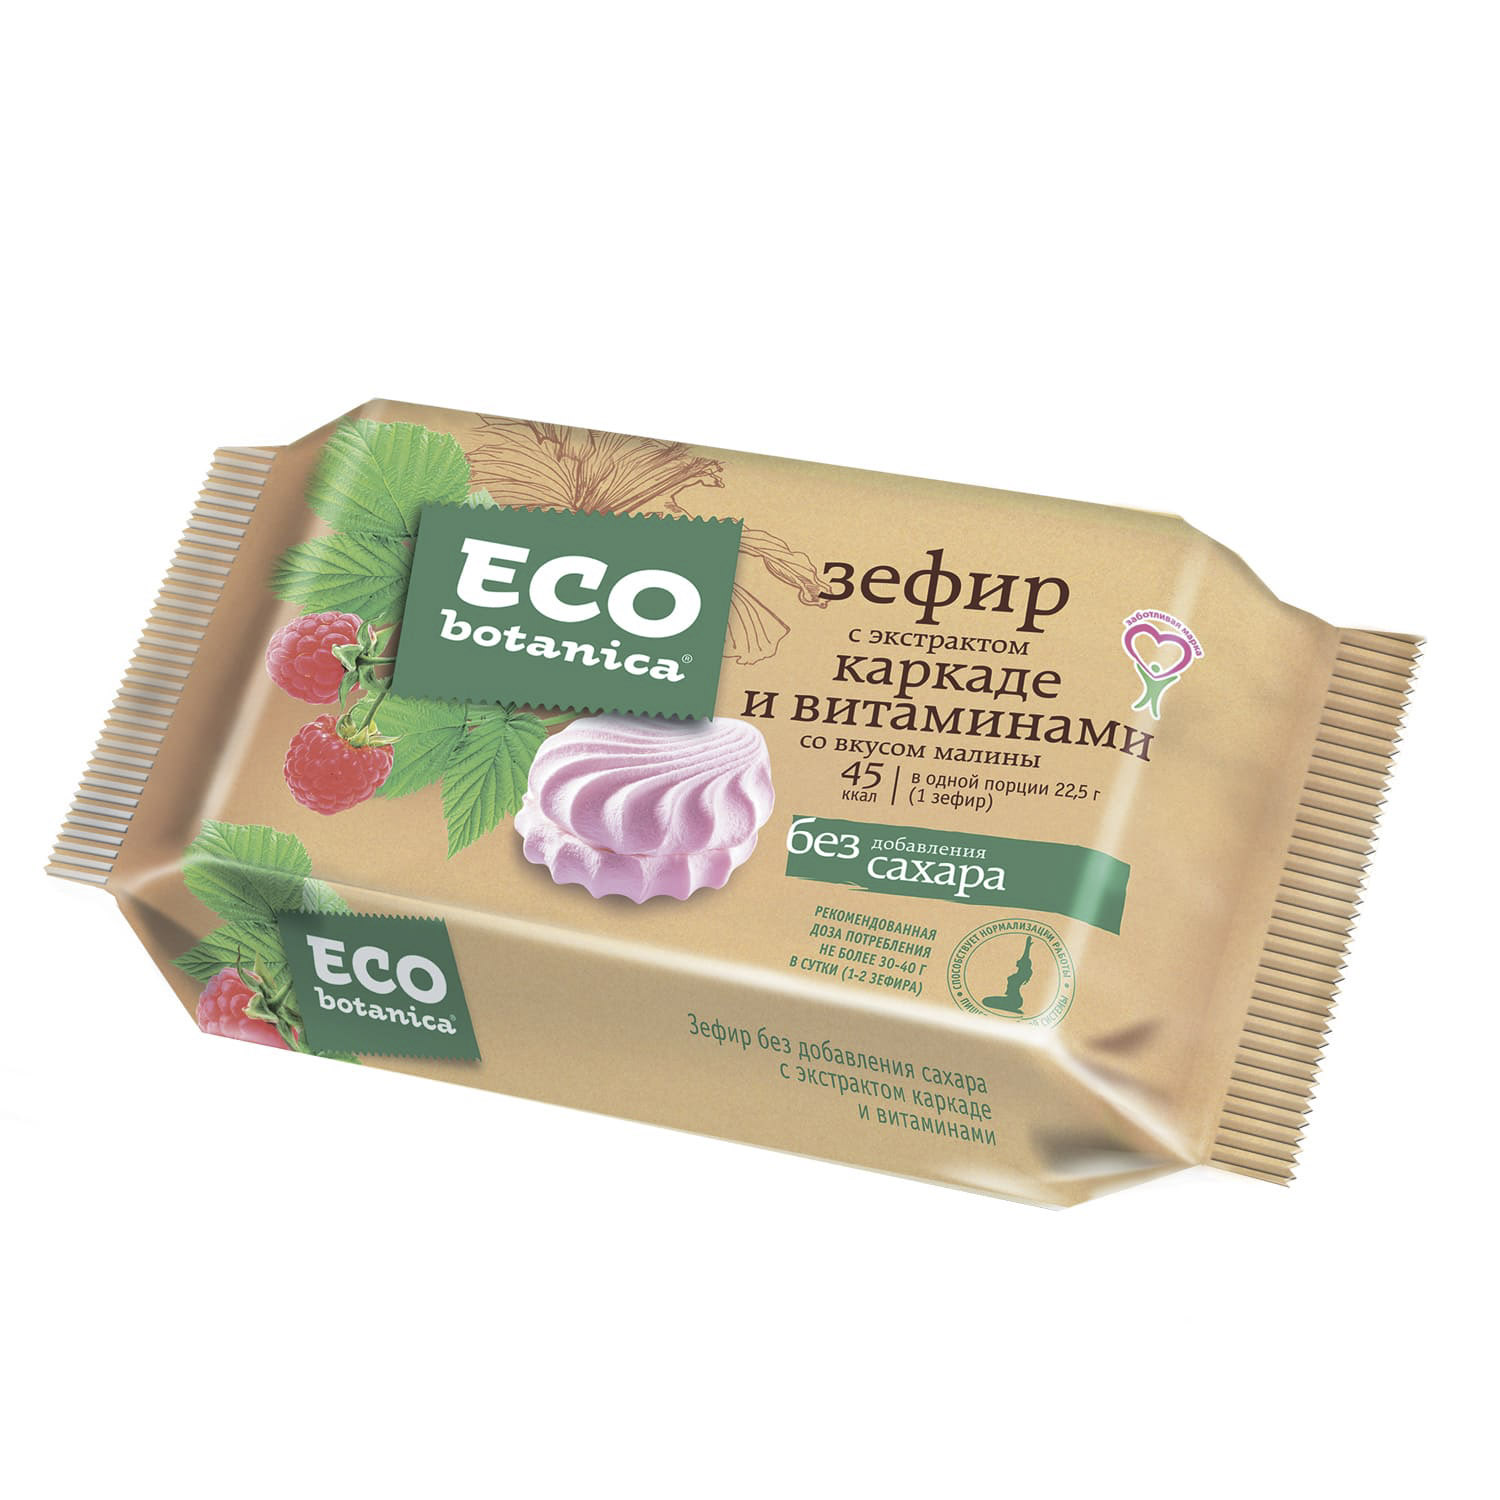 Зефир Eco Botanica с экстрактом каркаде и вкусом малины 135 г зефир eco botanica 135г б сахара со вкусом малины